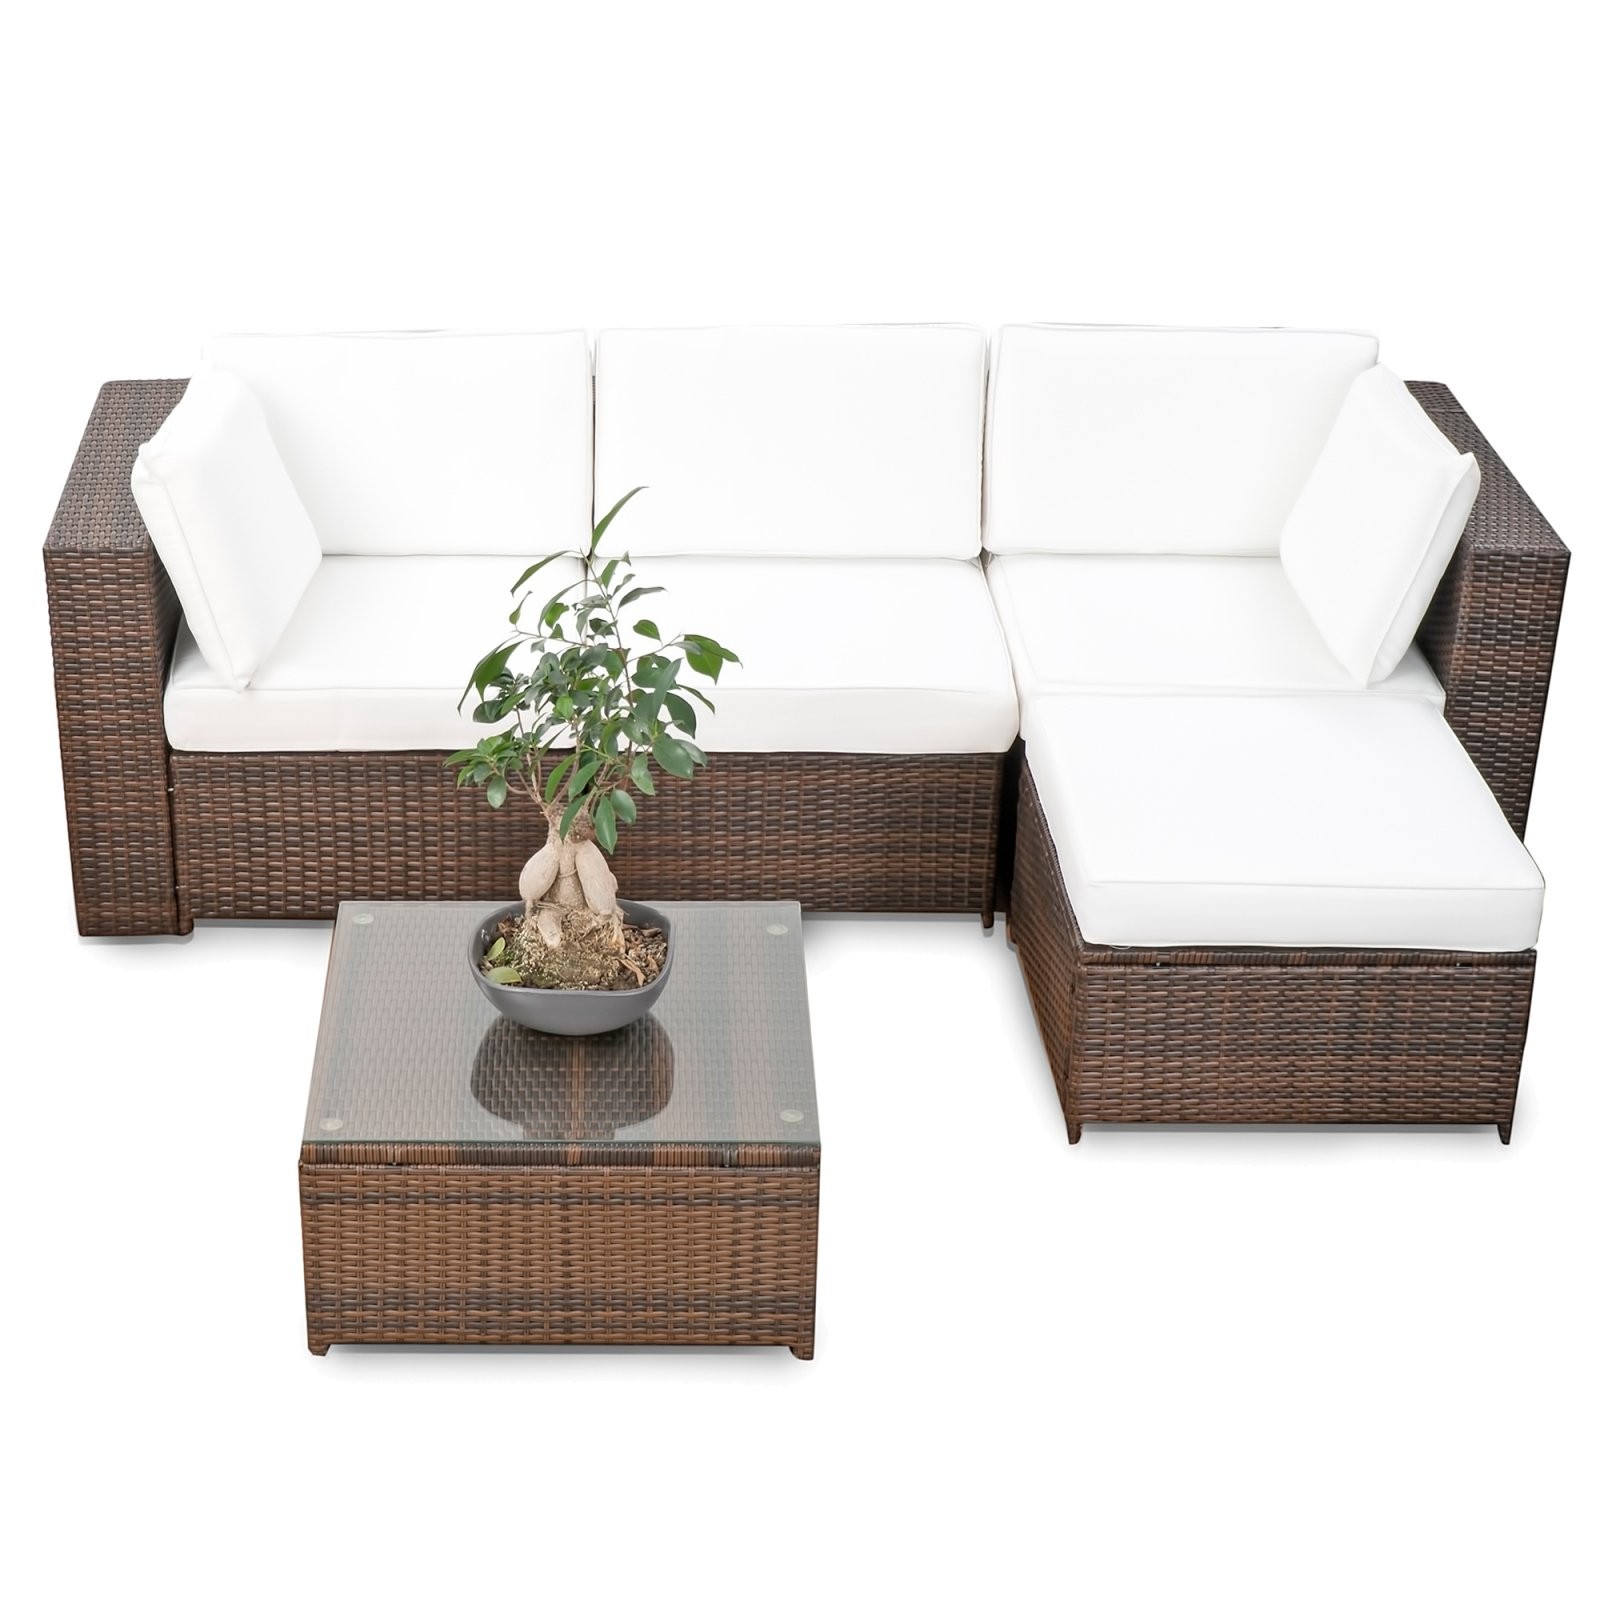 Lounge Gartenmöbel Günstig Online Kaufen Bei Real von Garten Lounge Set Gebraucht Bild